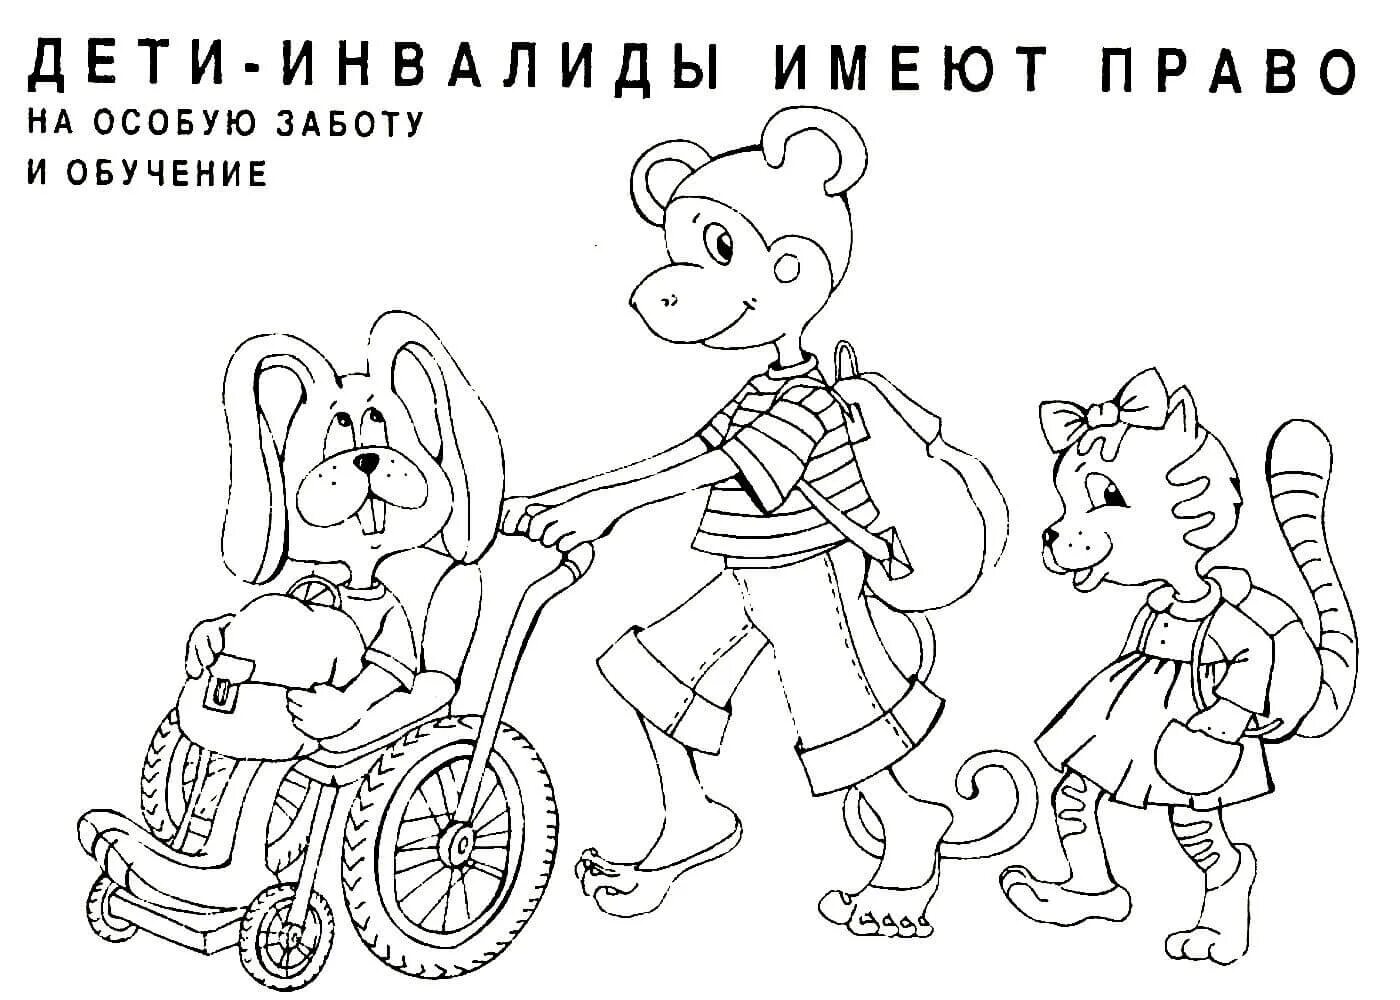 Российским детям в картинках объяснили, что честными выборами в РФ разве что инопланетян дурить